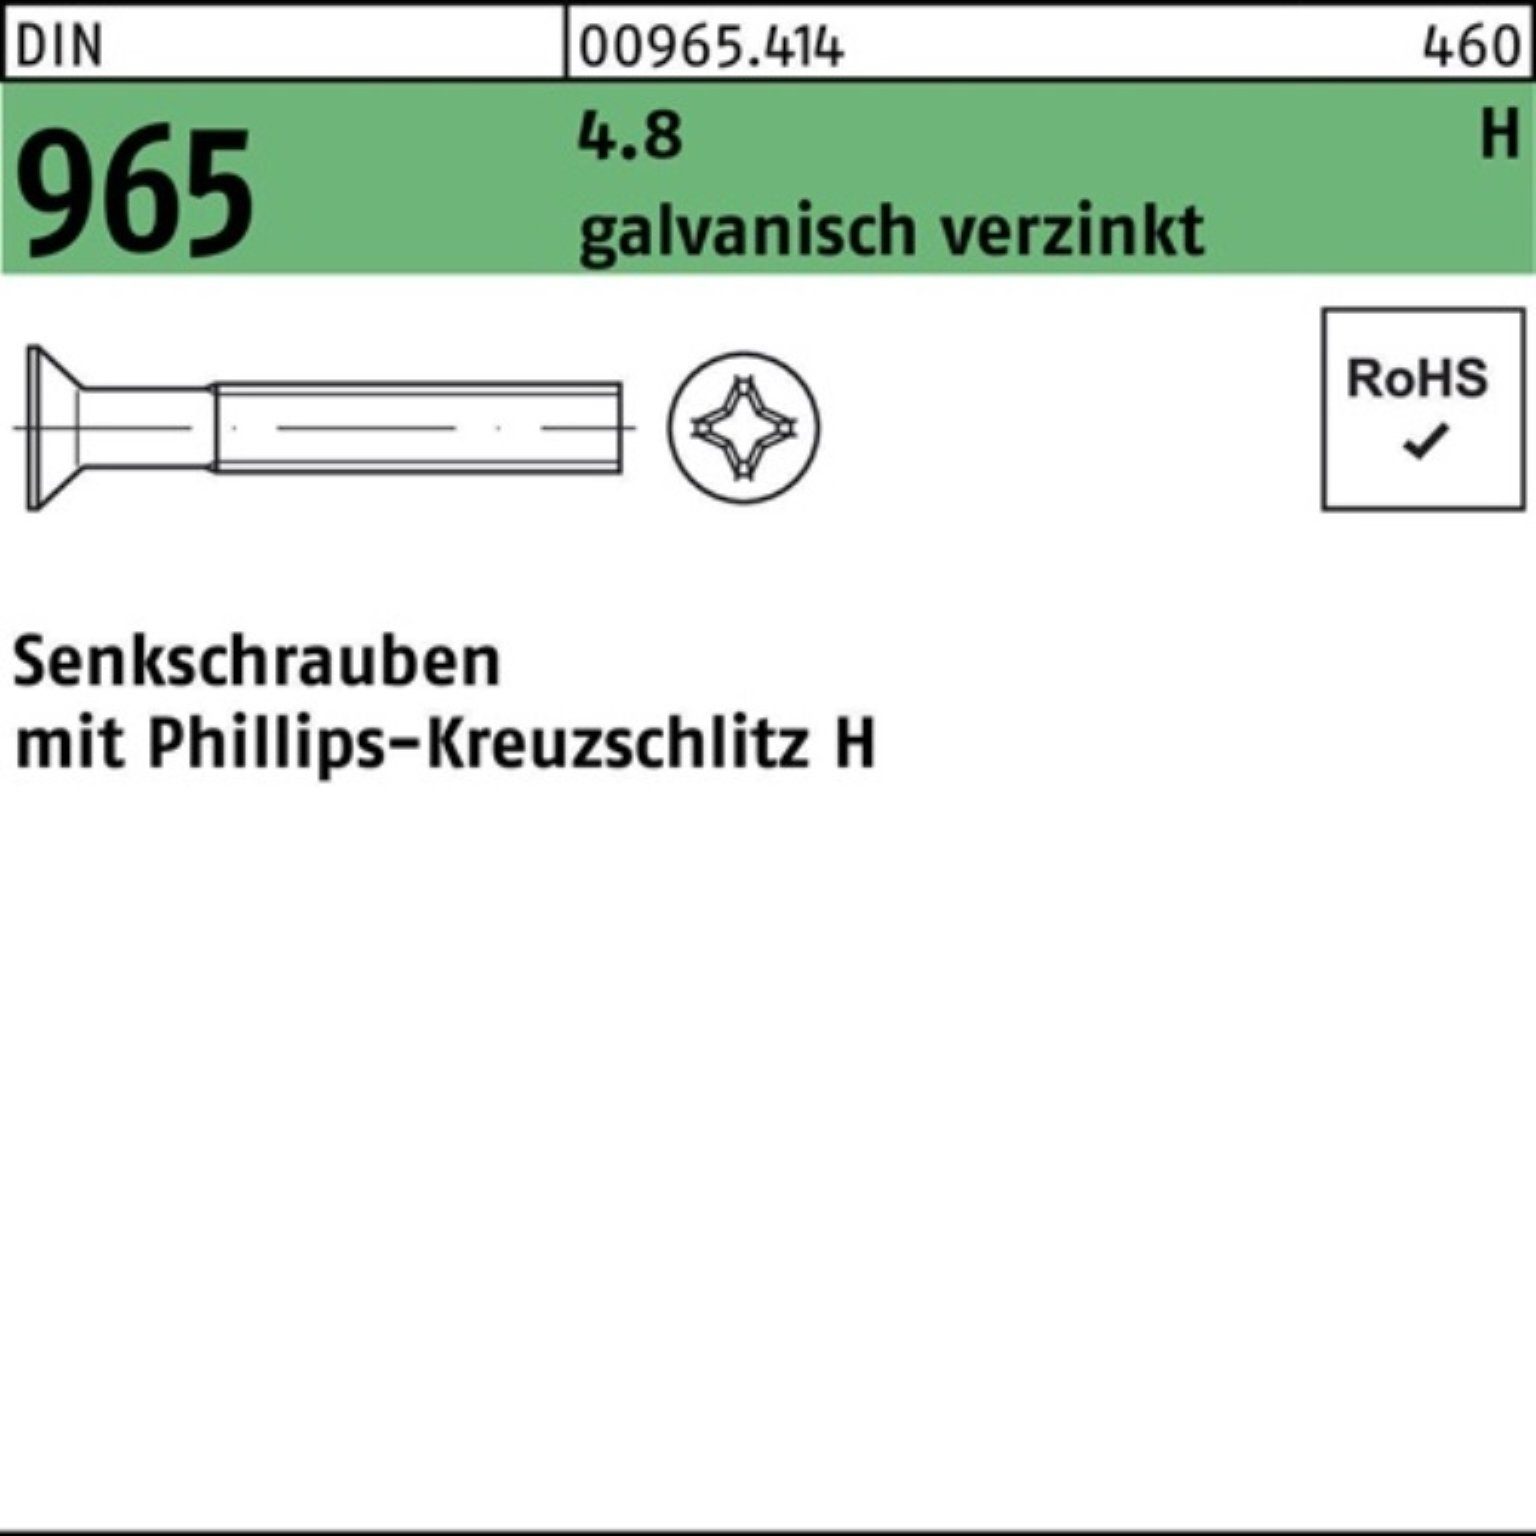 M2x DIN Reyher Pack galv.verz. 10-H 965 200er PH Senkschraube Senkschraube DIN 200St. 4.8